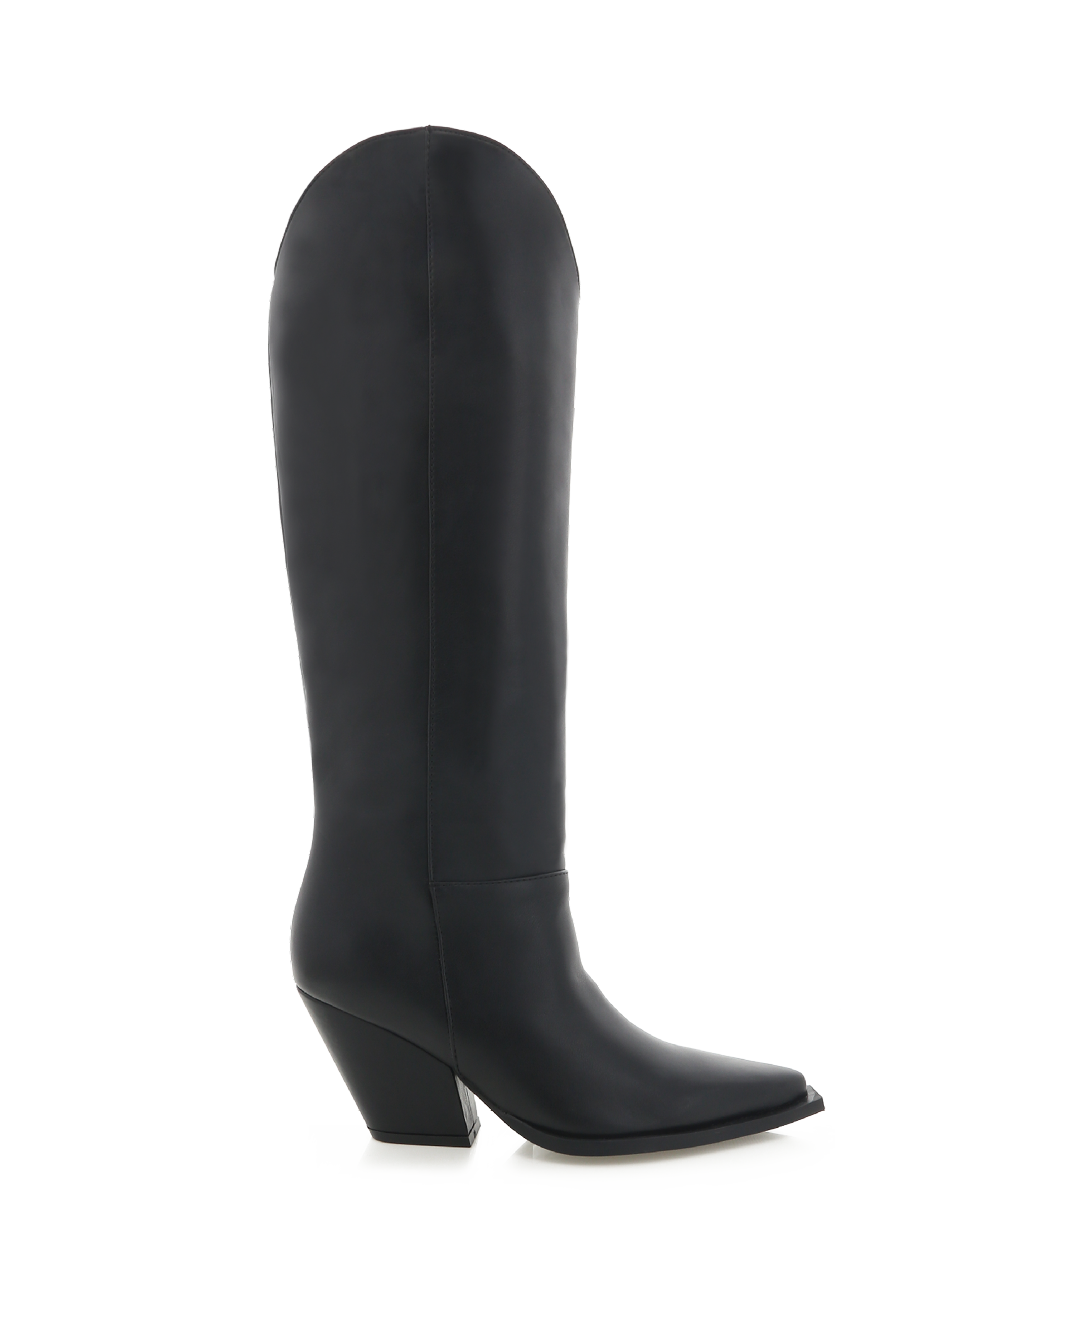 THE WESTERN - BLACK-Boots-Billini-Billini